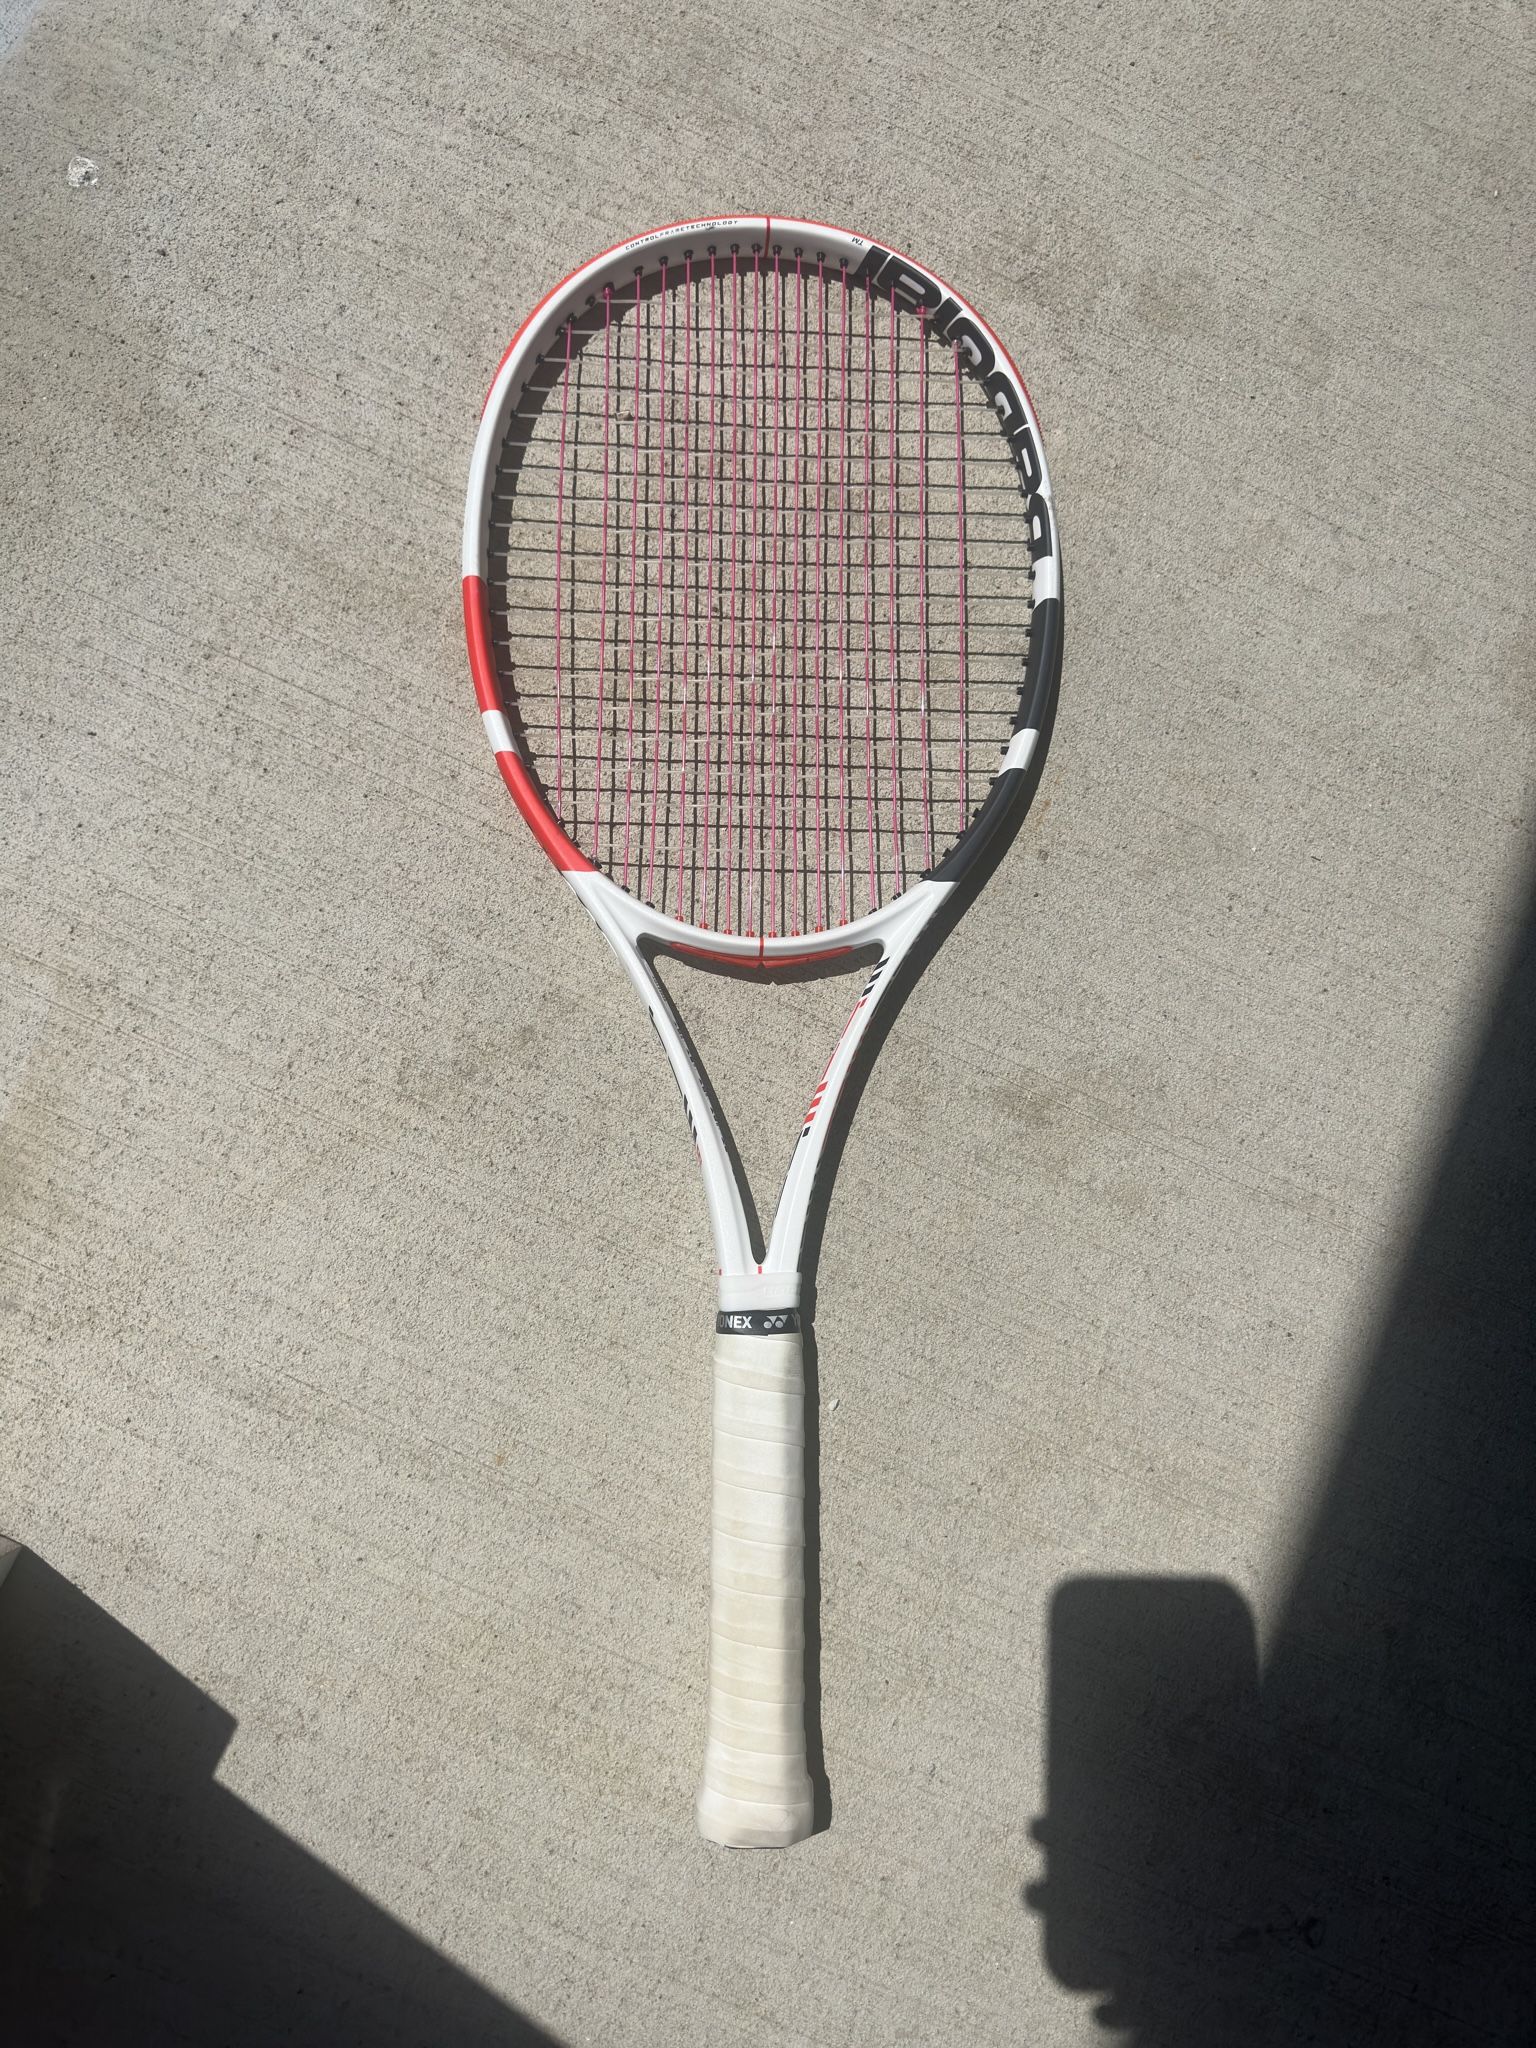  Babolat tennis racket 